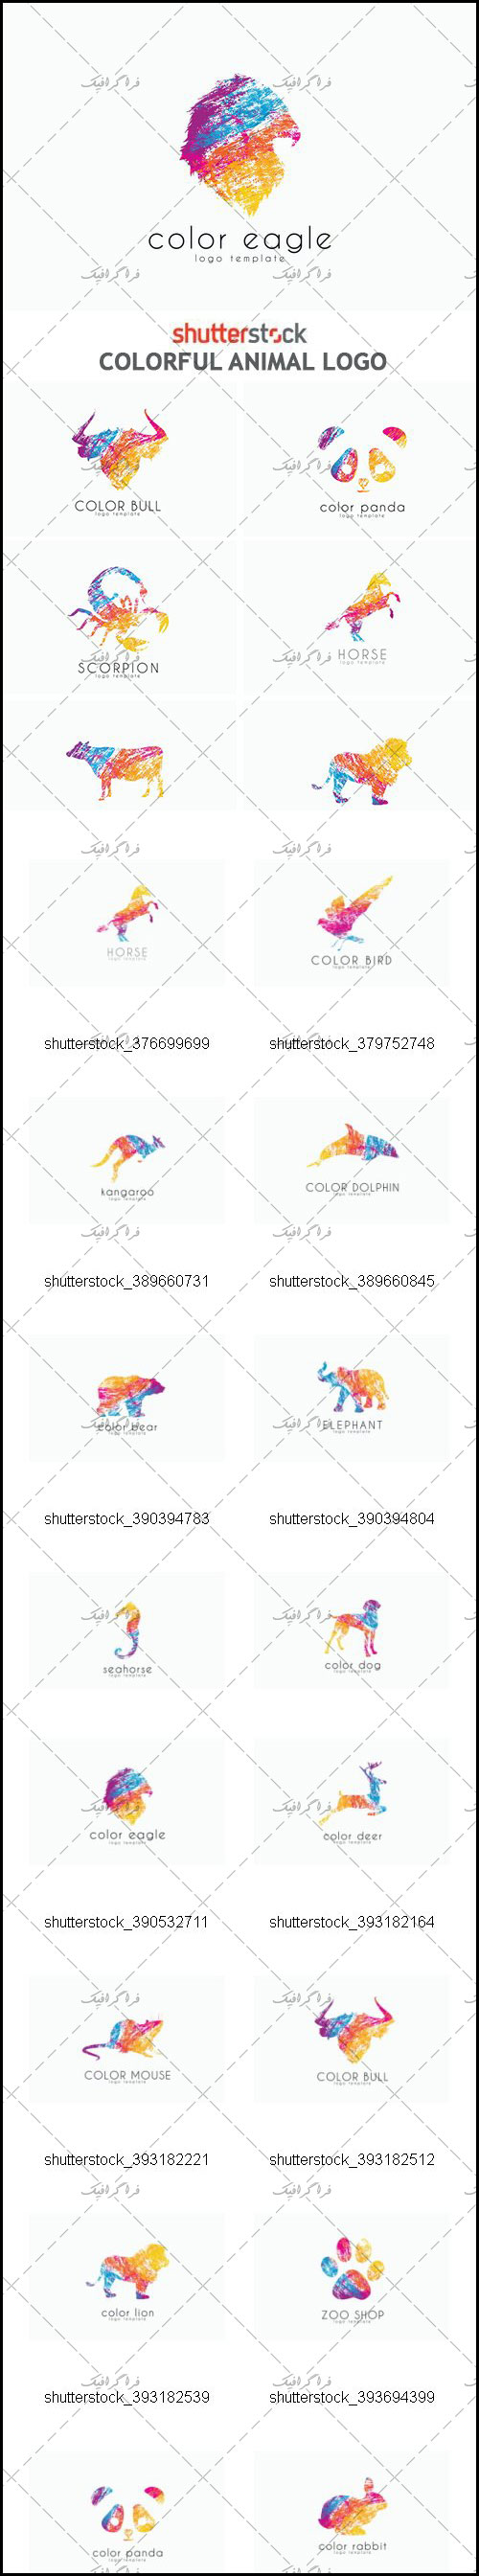 دانلود لوگو های رنگارنگ حیوانات - Colorful Animal Logos